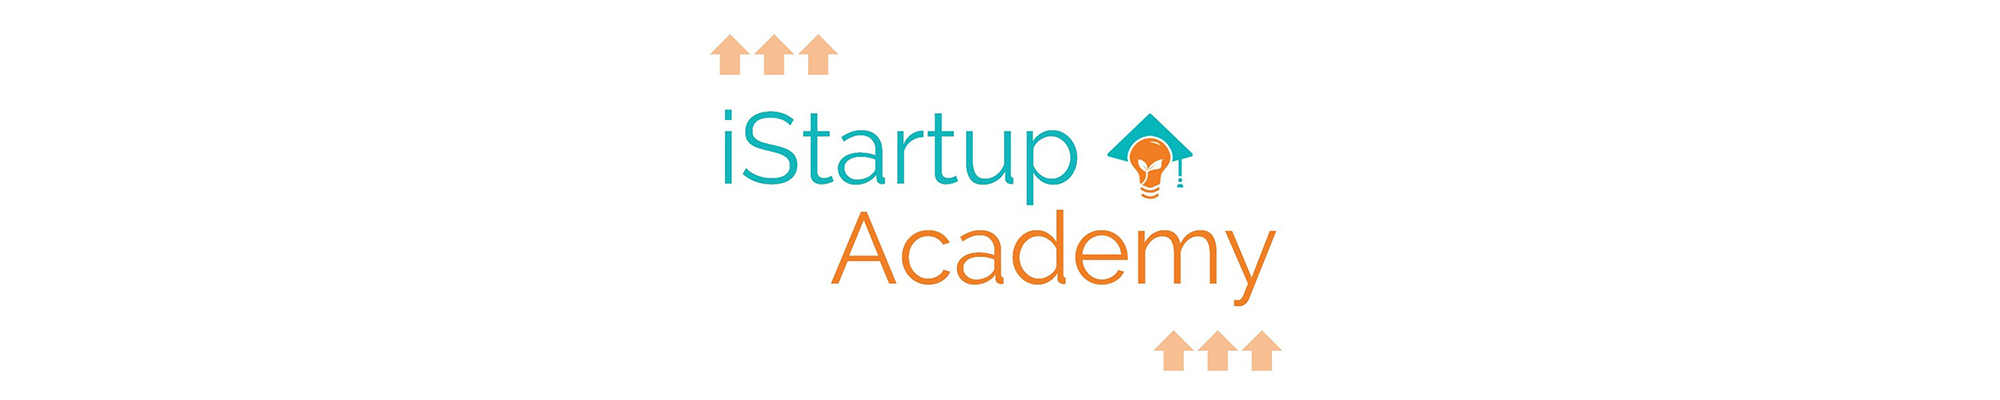 iStartup Academy Banner